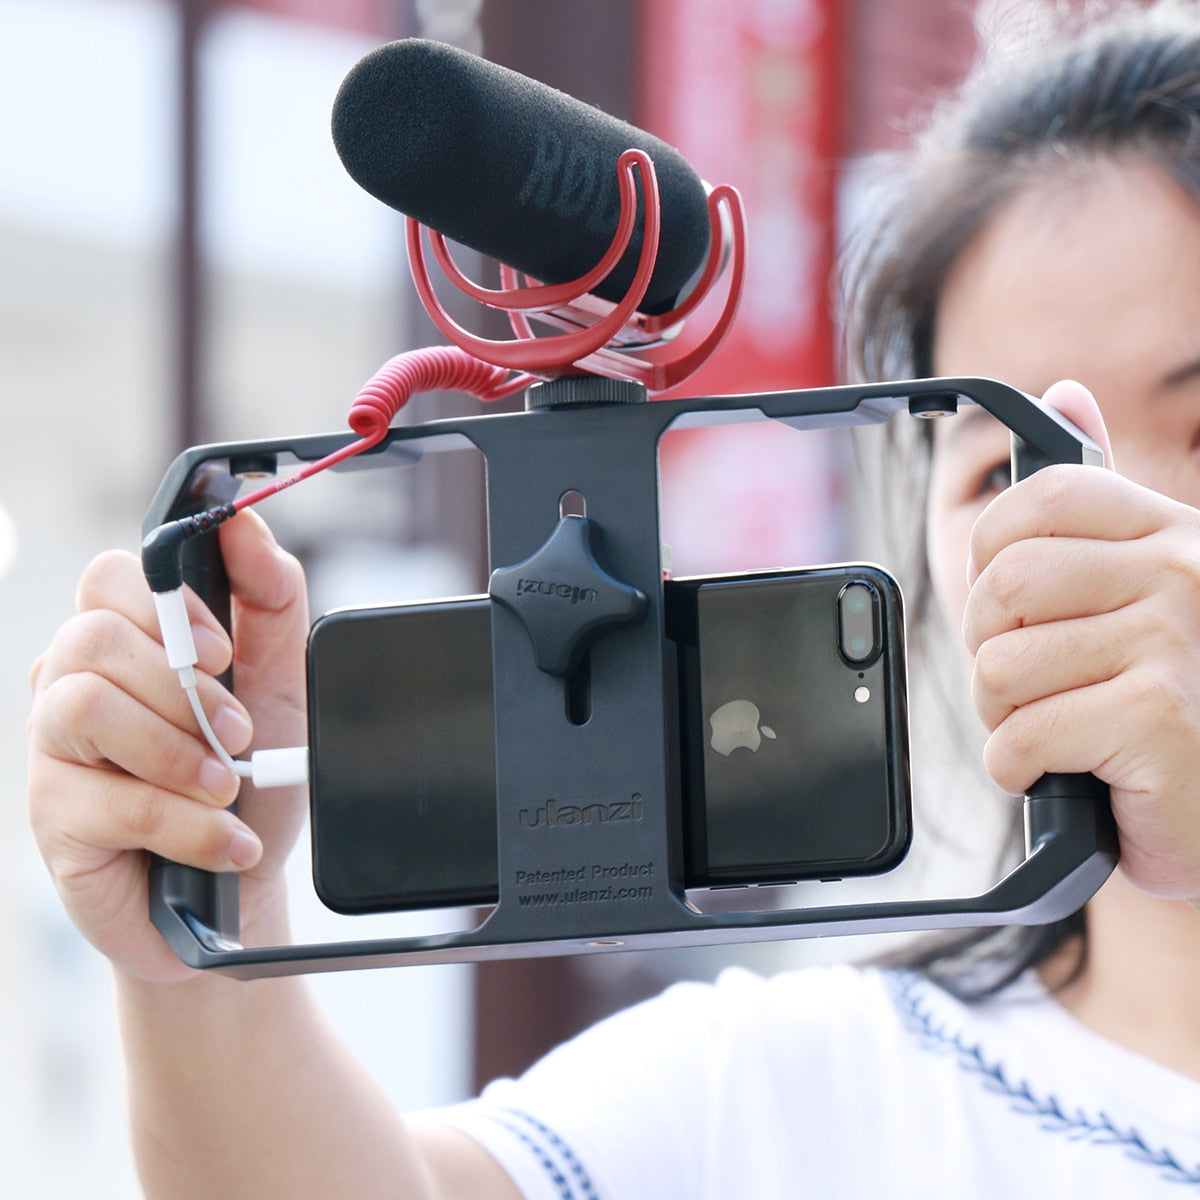 Ulanzi U Rig Pro Smartphone Video Rig | Vlogging, Mobile Filmmaker